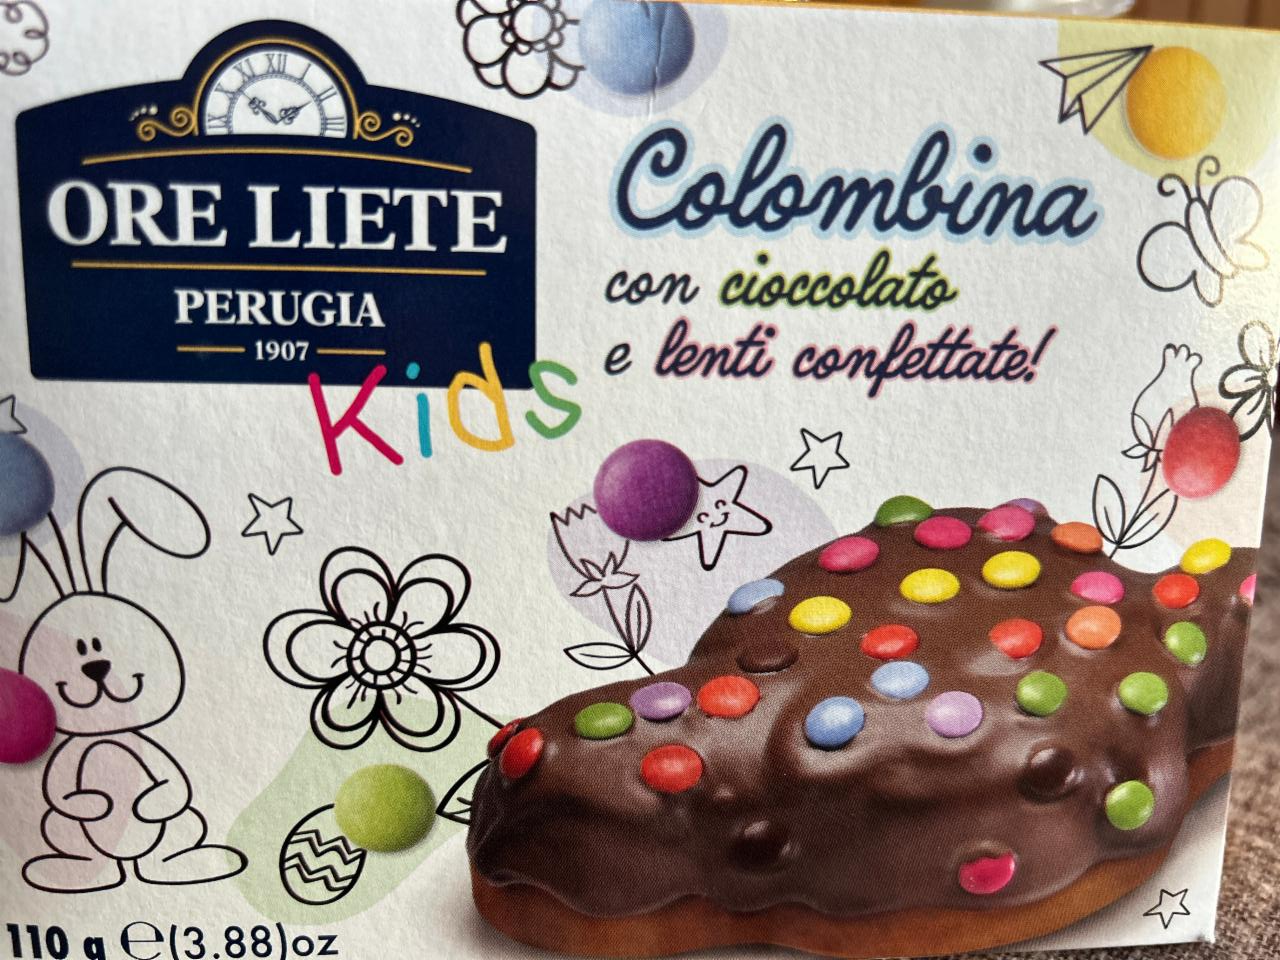 Fotografie - Colombina con cioccolato e lenti confettate Ore Liete Perugia